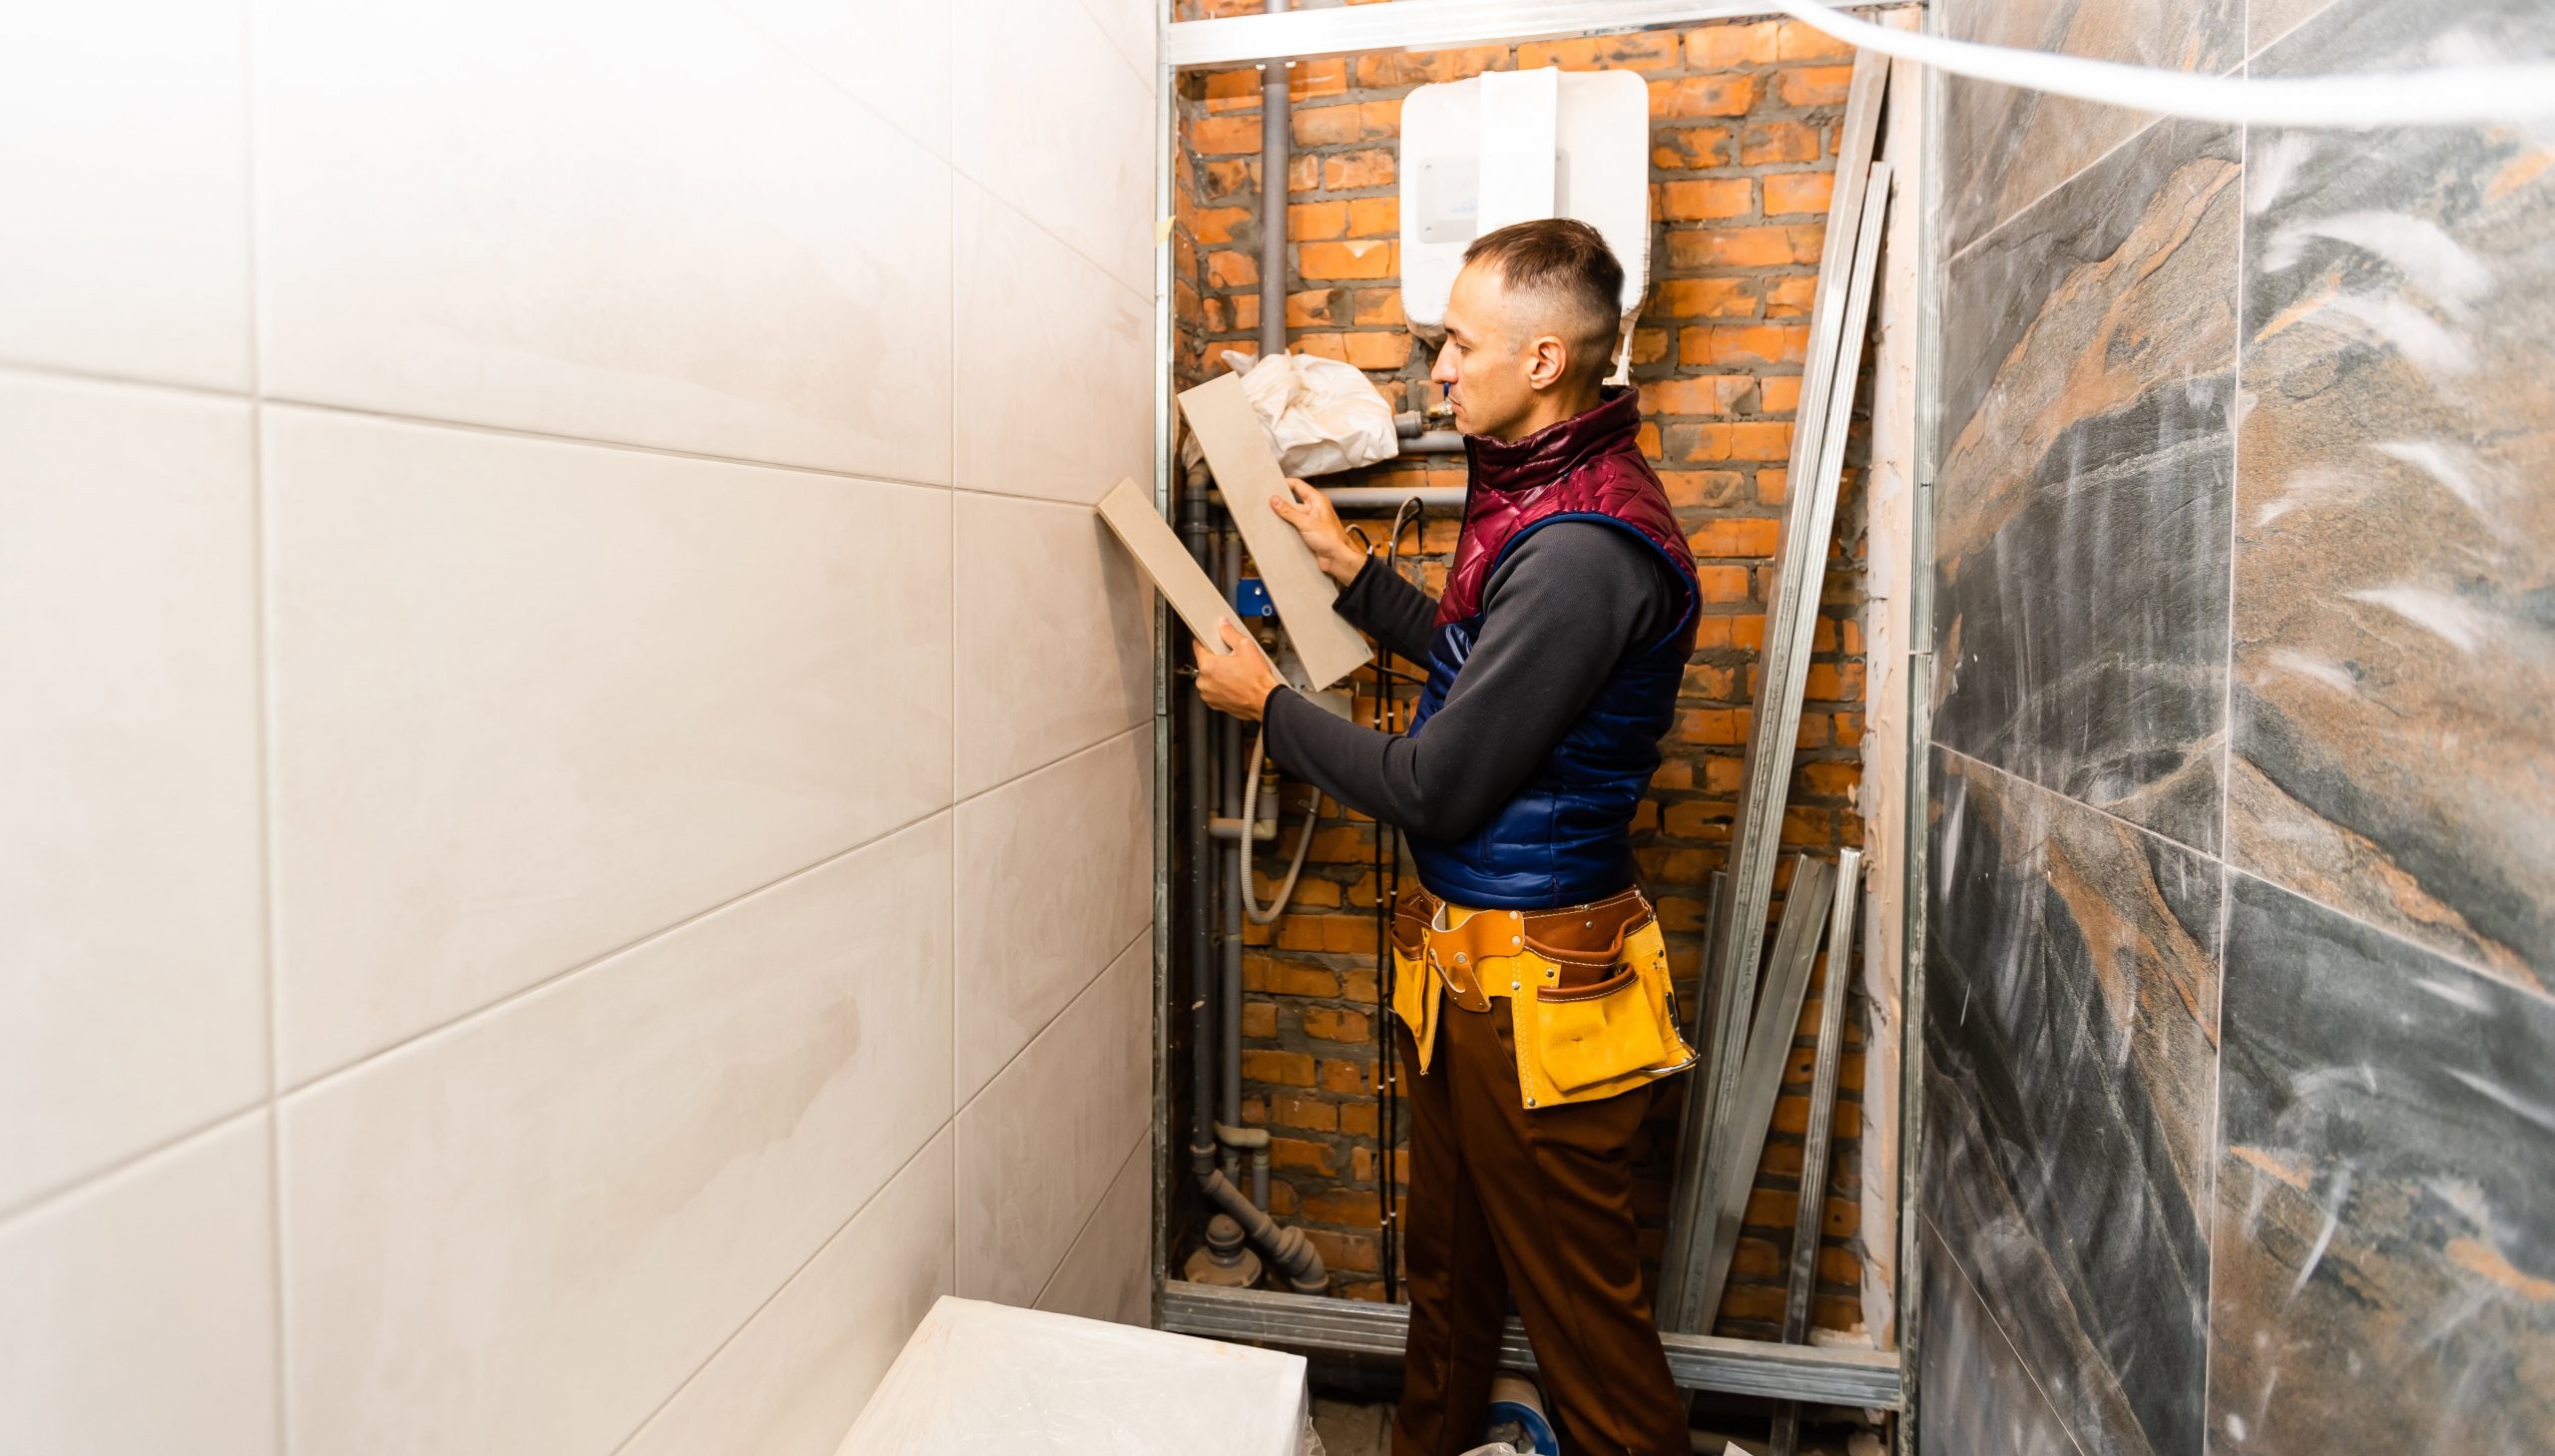 industrial tiler builder worker installing floor t 2022 11 03 09 14 13 utc min scaled